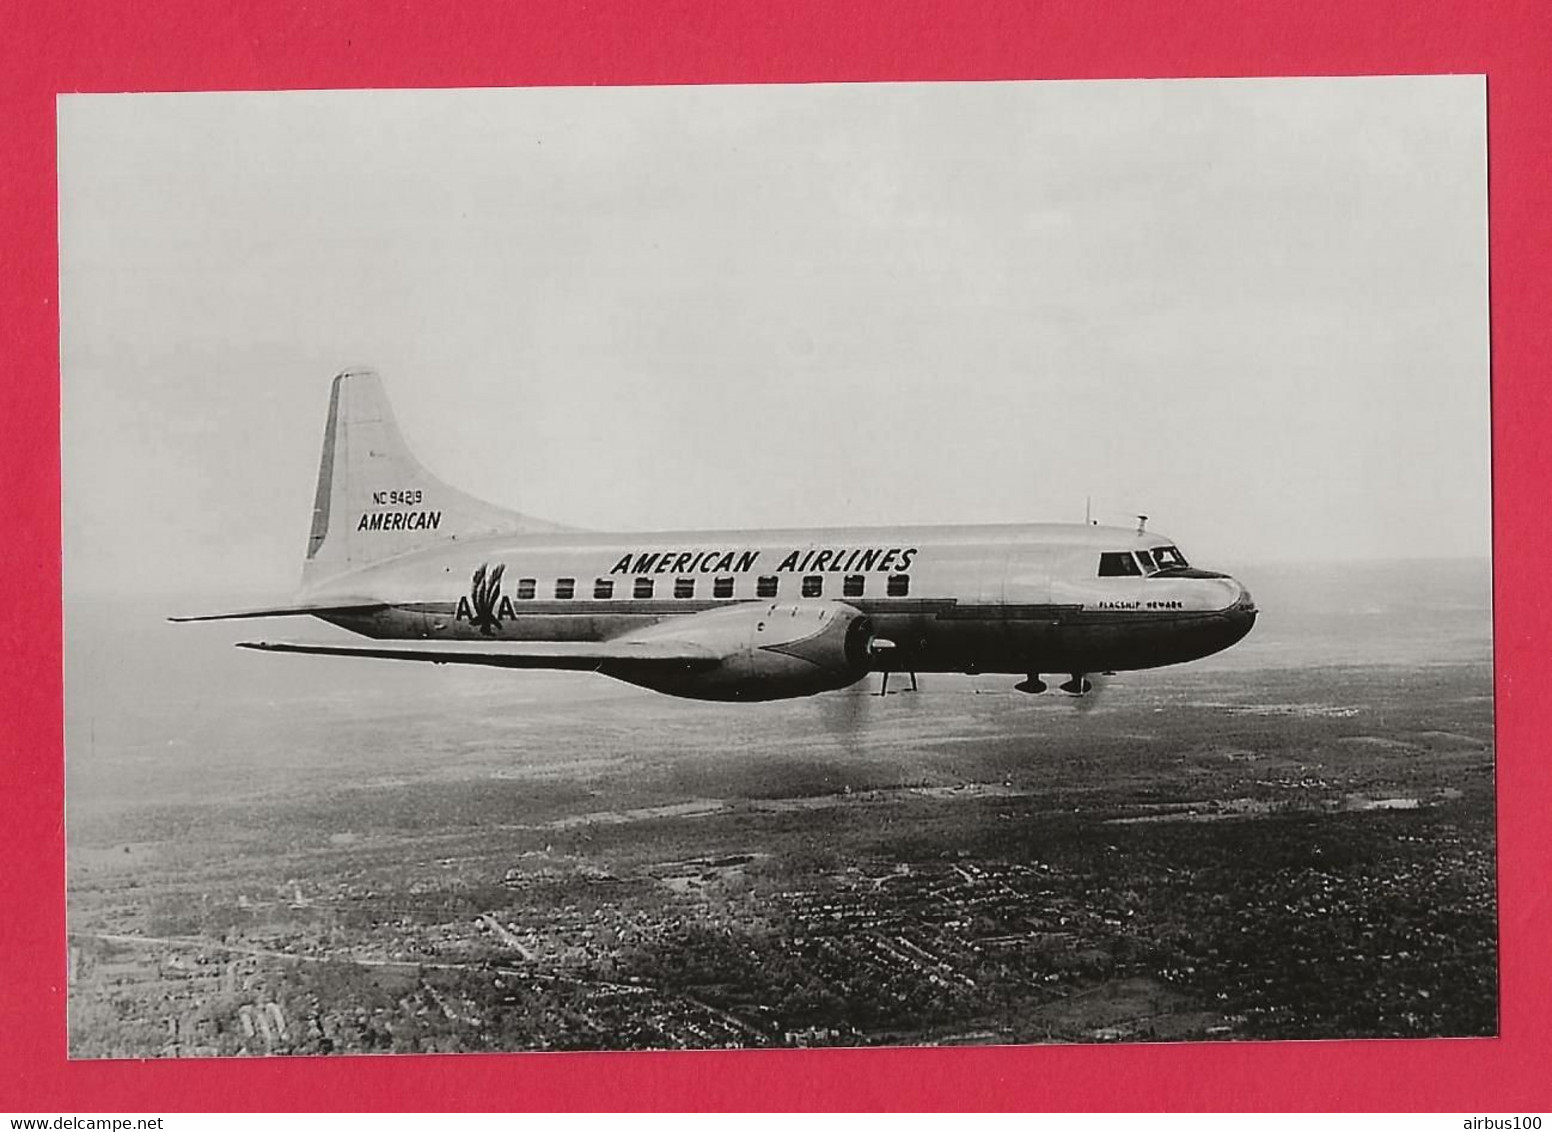 BELLE PHOTO REPRODUCTION AVION PLANE FLUGZEUG - DOUGLAS AMERICAN AIRLINES EN VOL - Aviazione